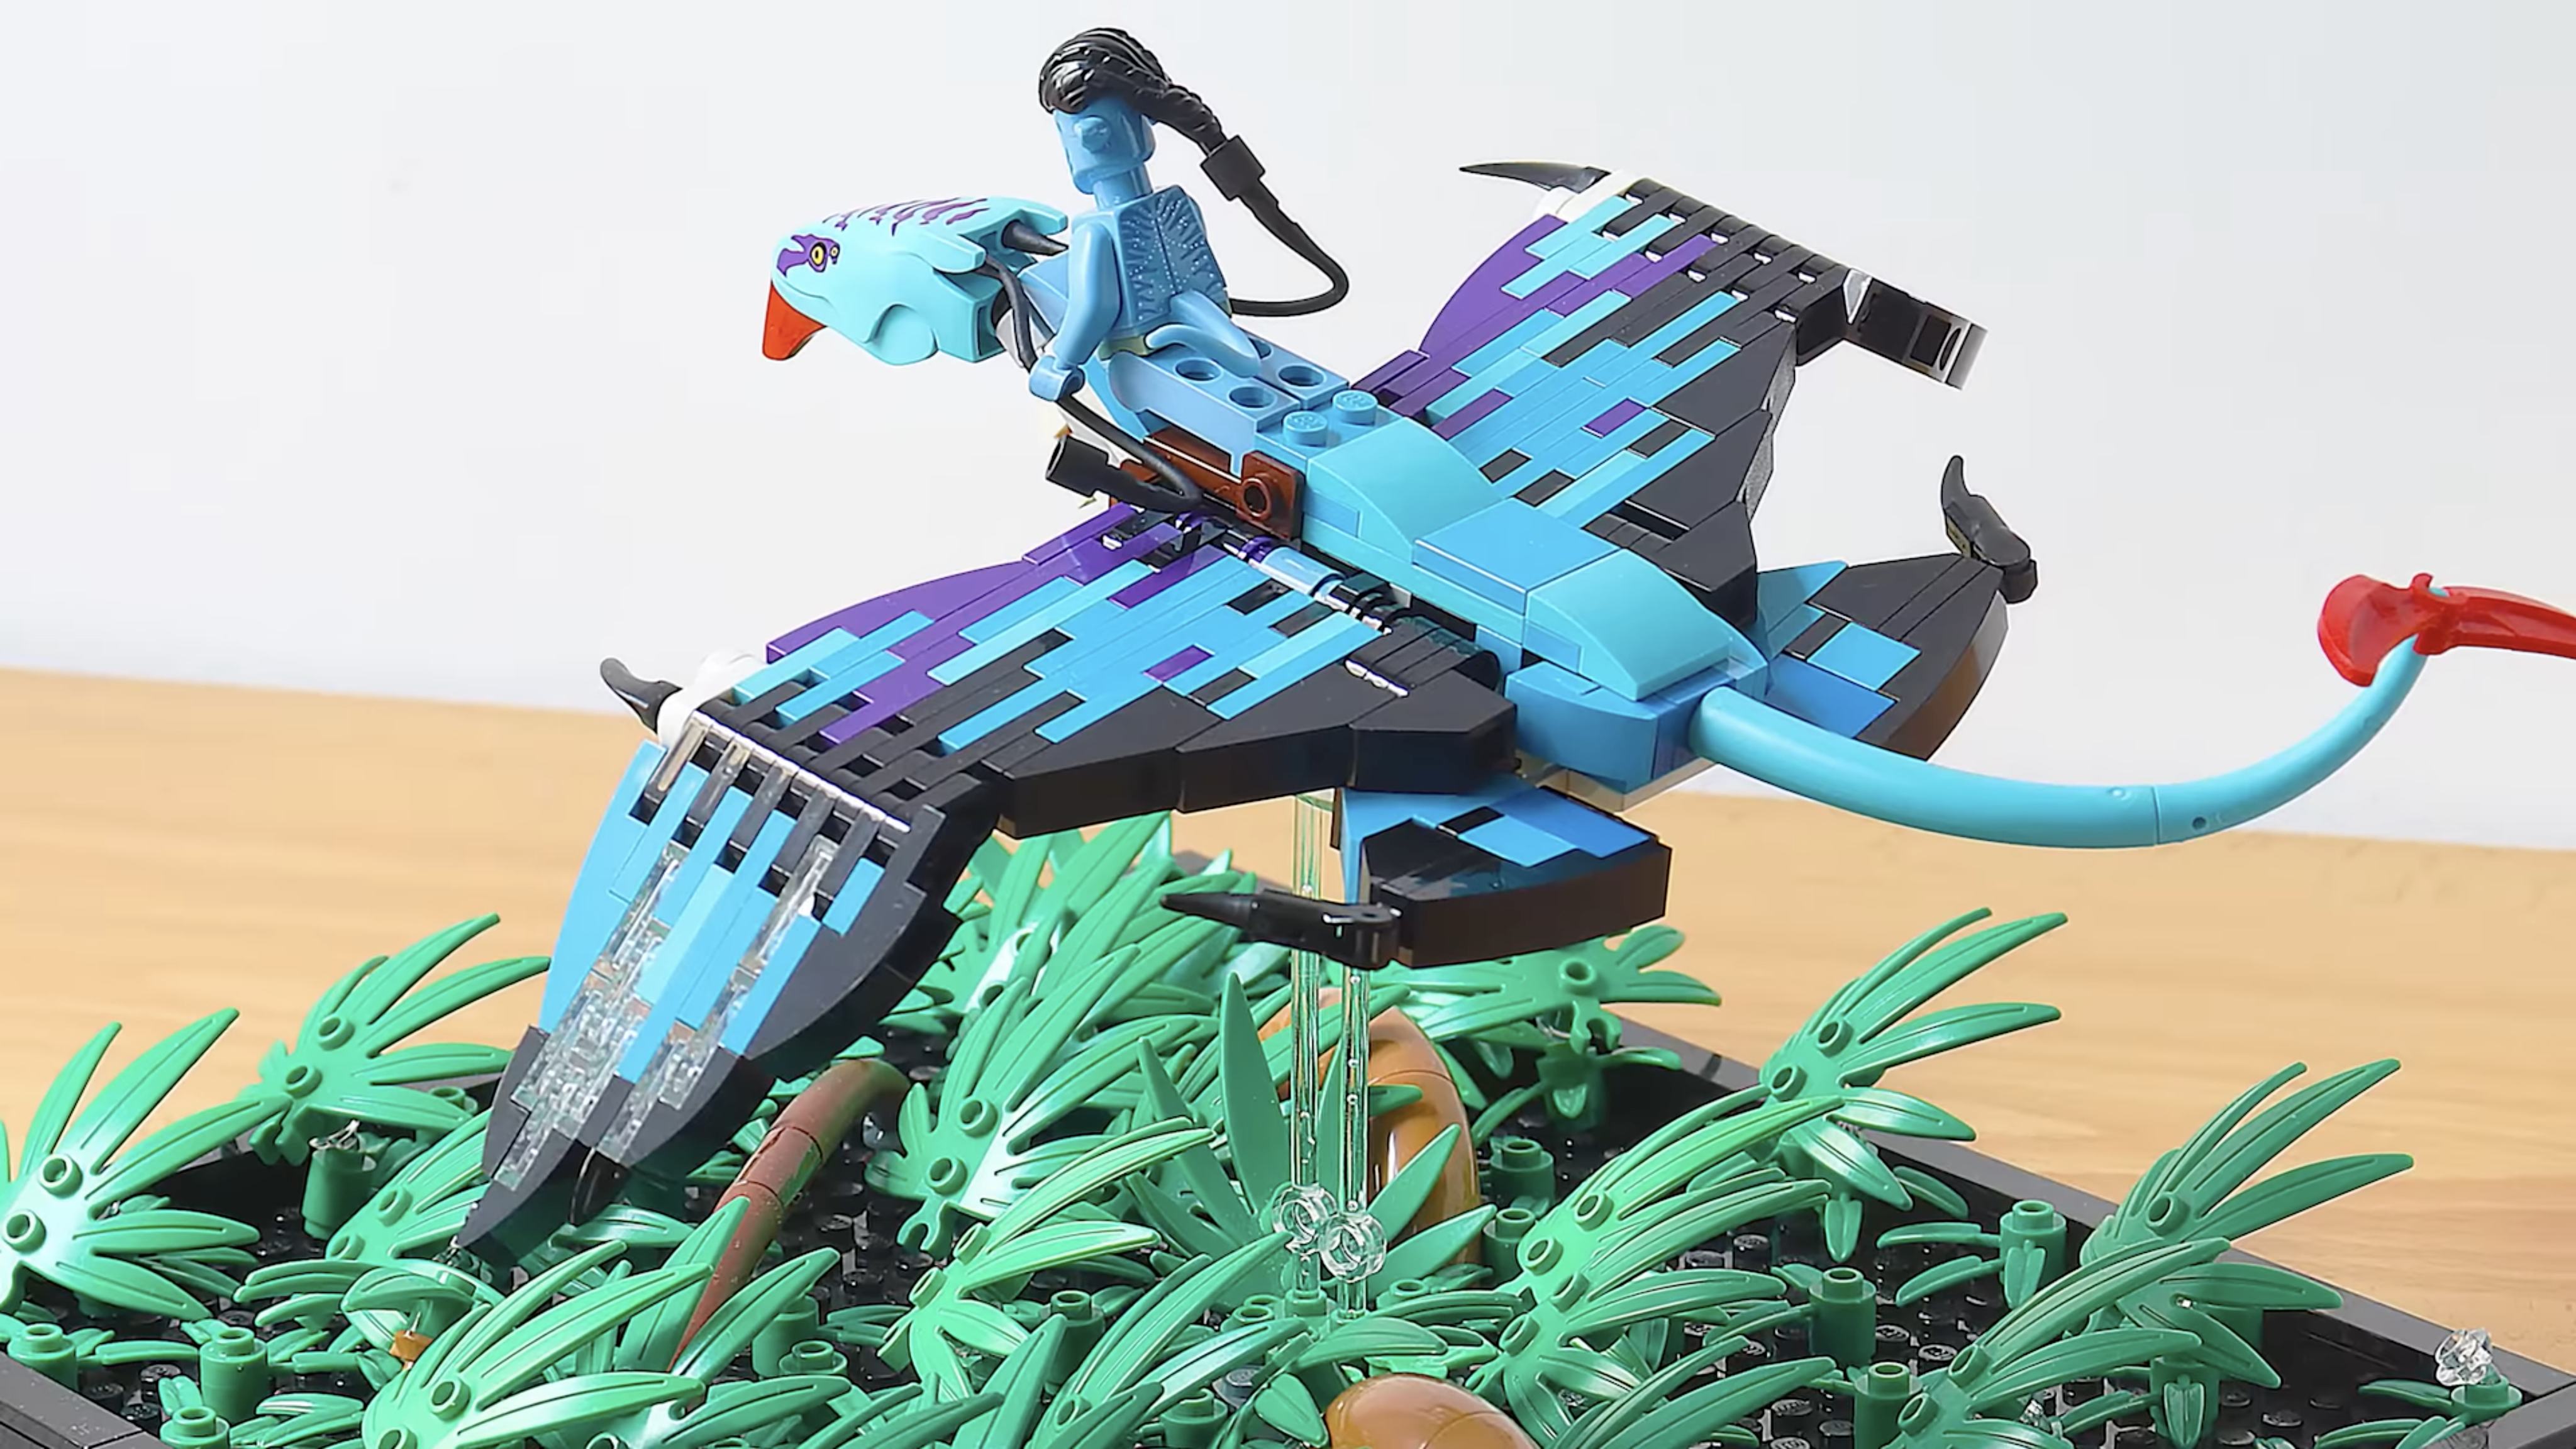 Cómo se vería LEGO Avatar con alas construidas con ladrillos?